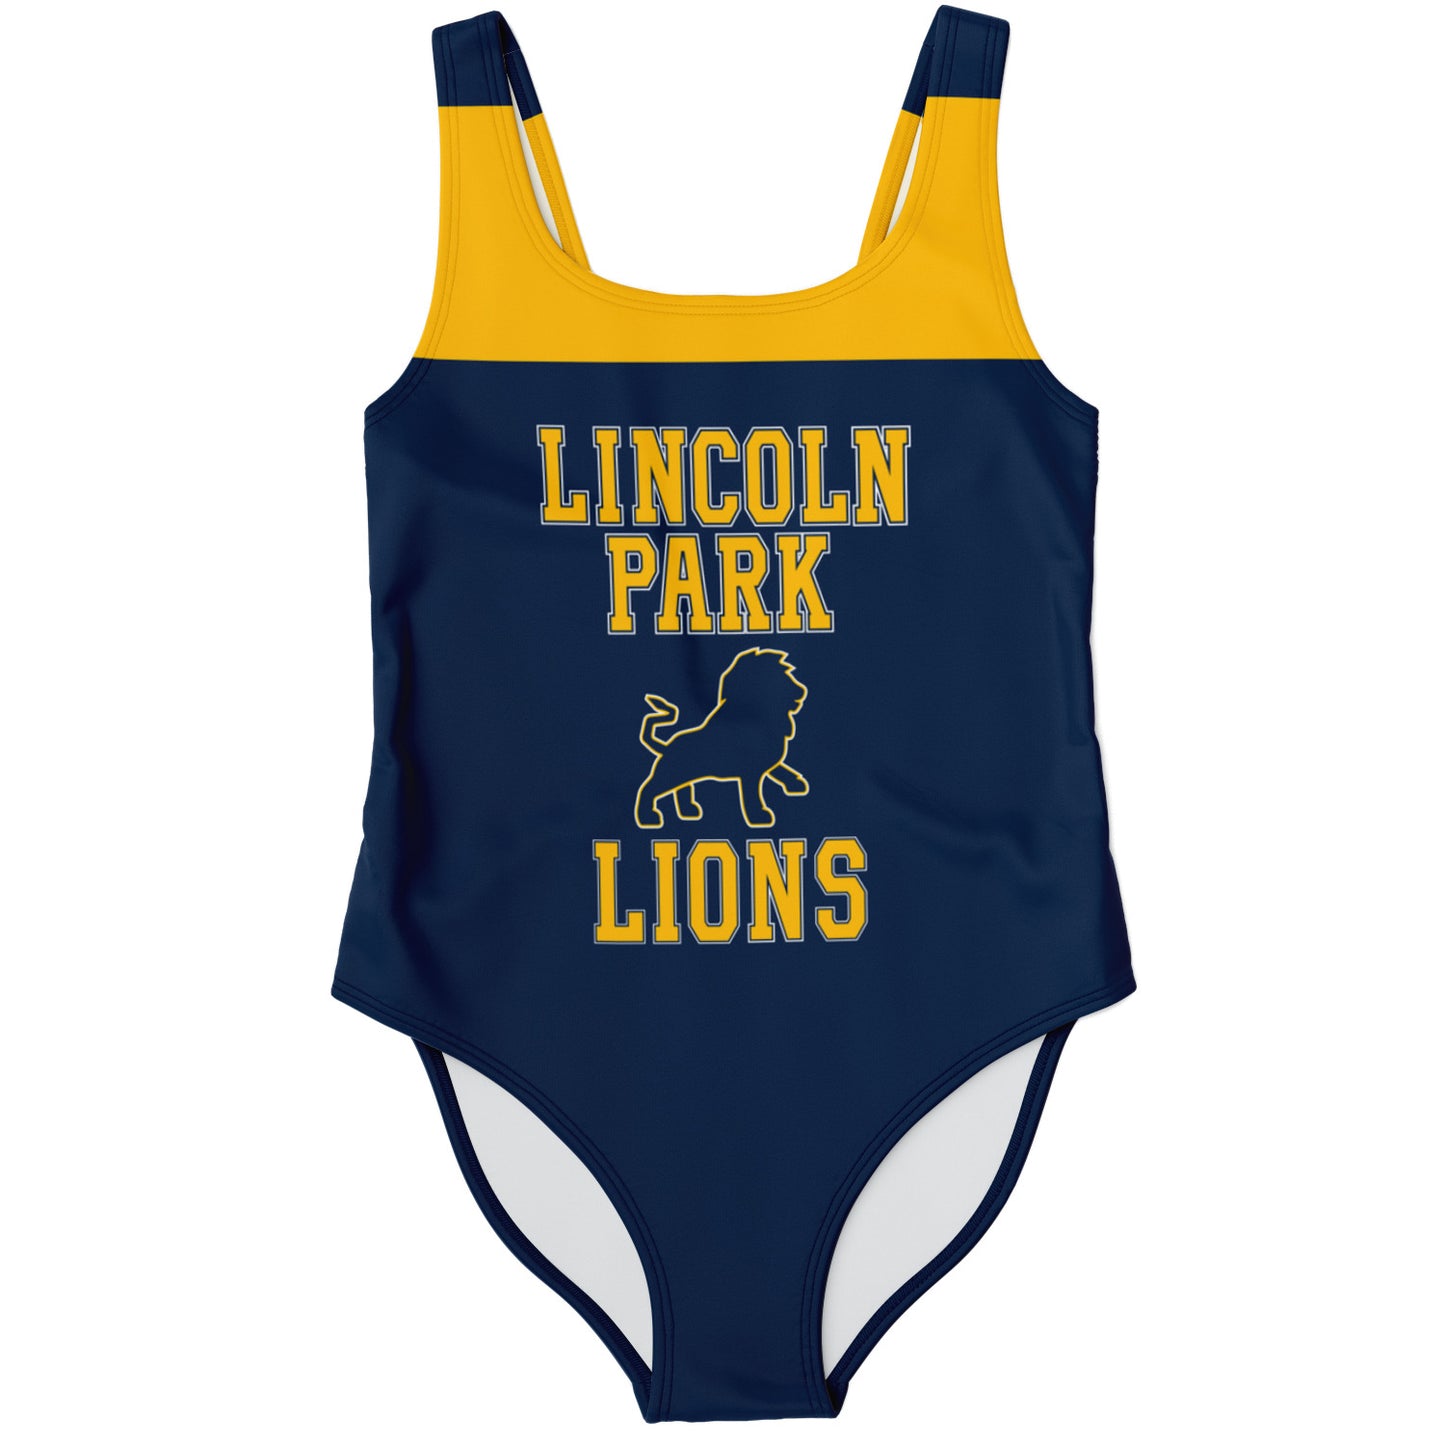 Lincoln Park High School Swimsuit | Bodysuit | Lincoln Park Lions